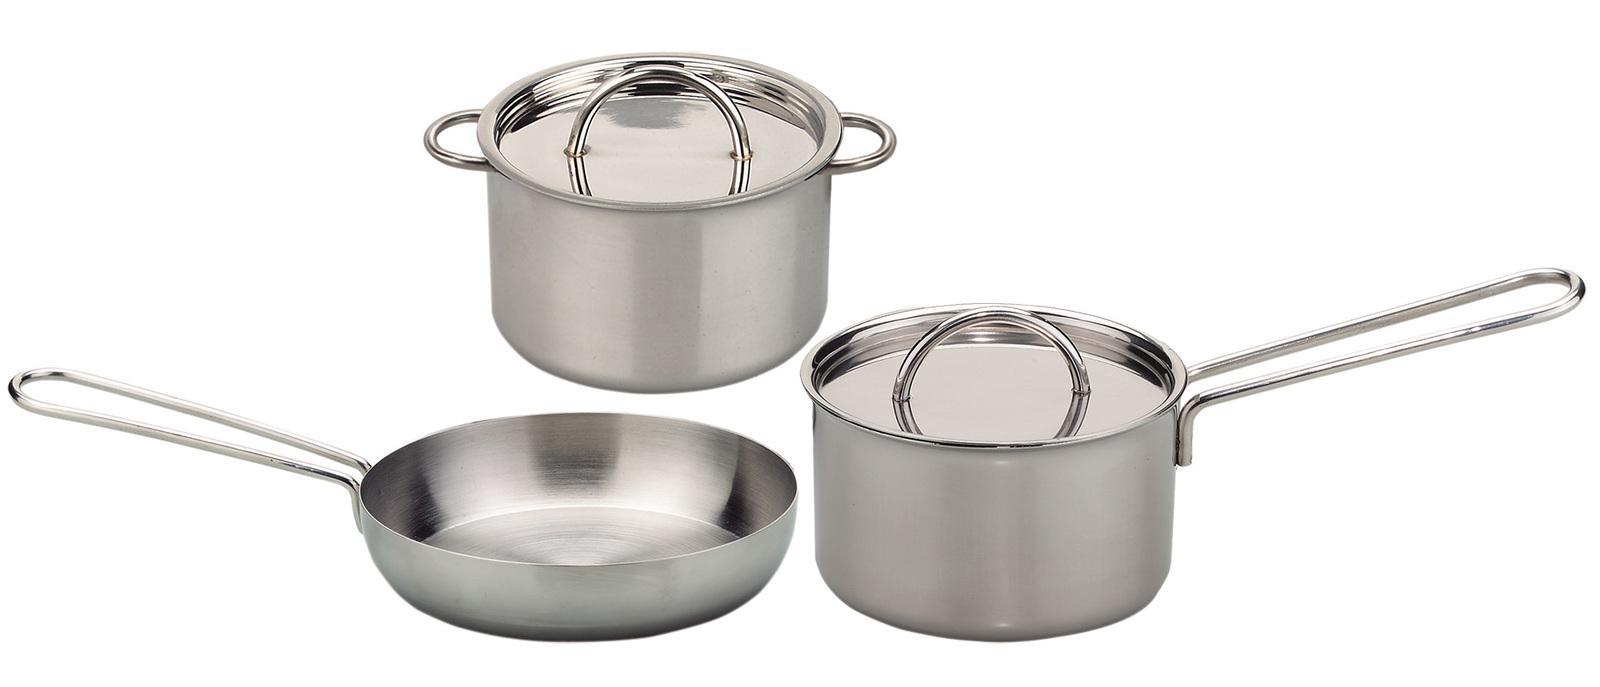 Gluckskafer Stainless Steel Cookware - Set 5pcs